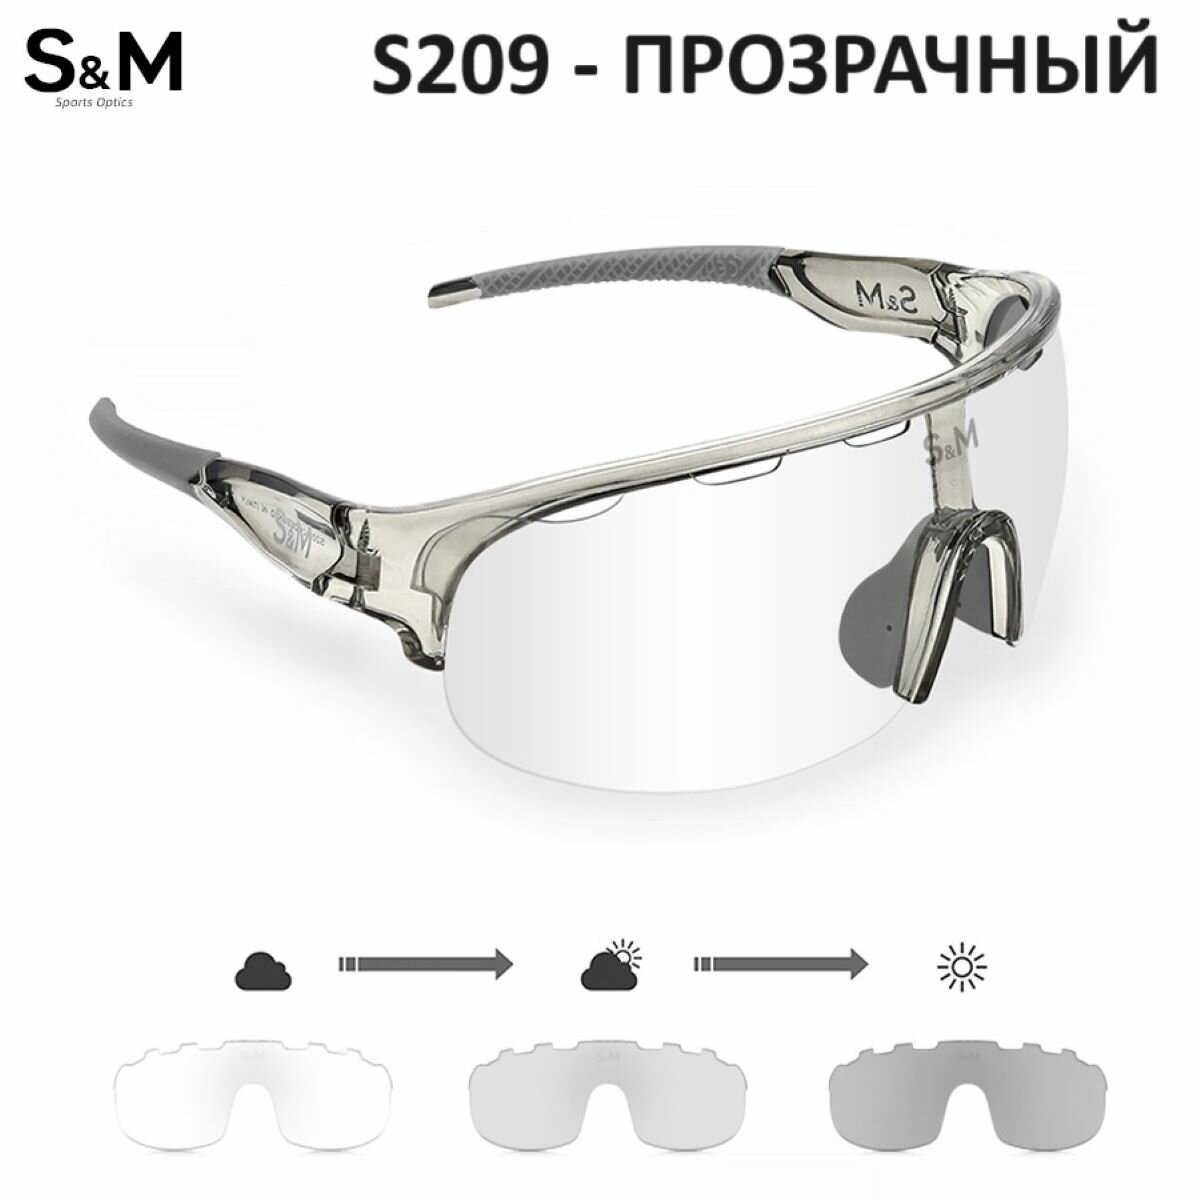 Спортивные очки с диоптрийной вставкой, фотохромные, прозрачные